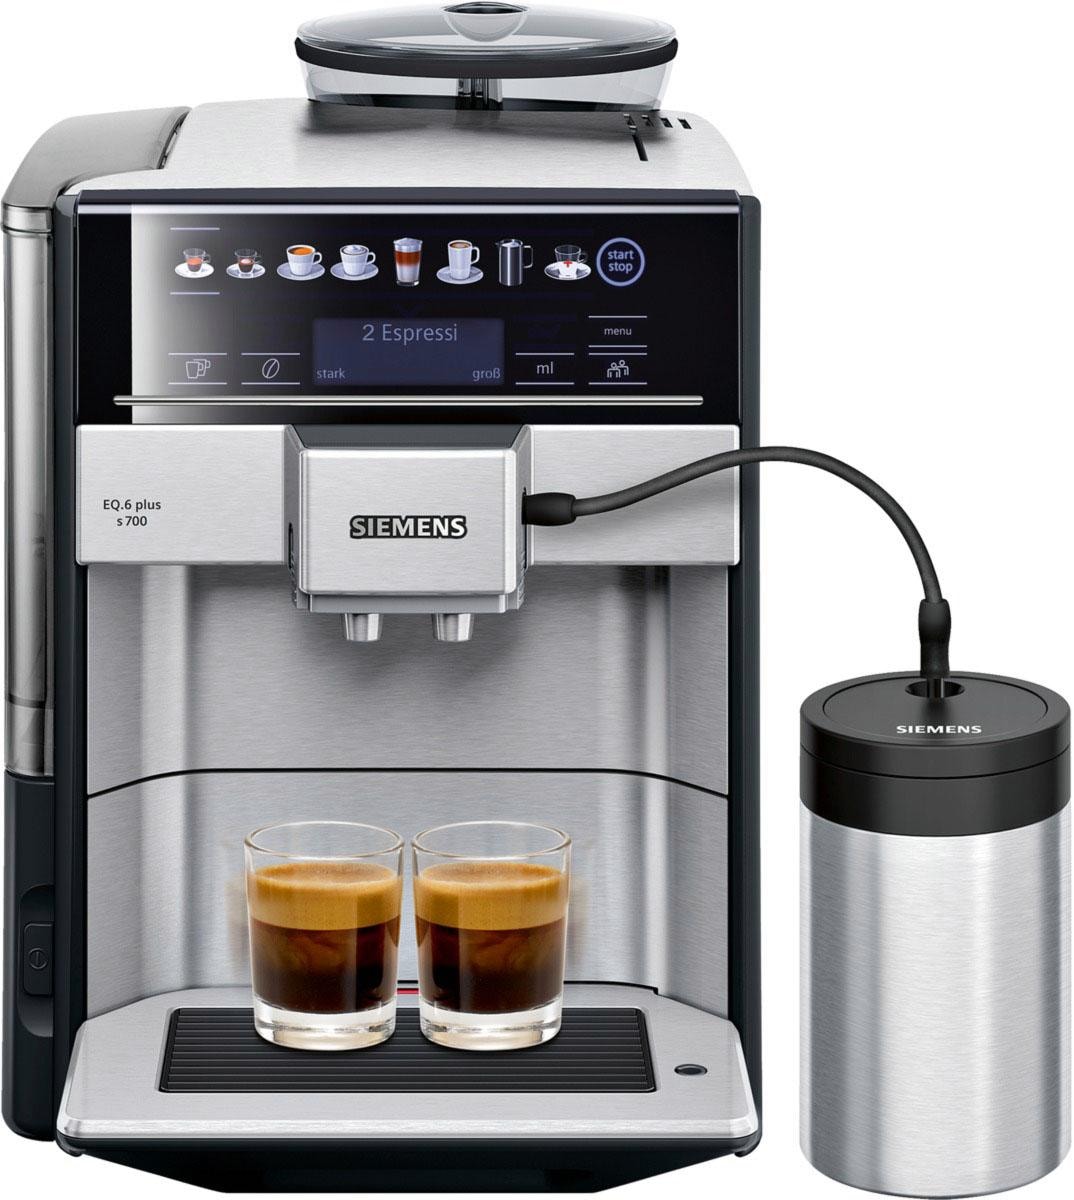 zu TE657M03DE«, Reinigung, im »EQ.6 Kaffeevollautomat inkl. plus Online Milchbehälter s700 Favoriten, Shop 4 isolierter OTTO SIEMENS bis autom.